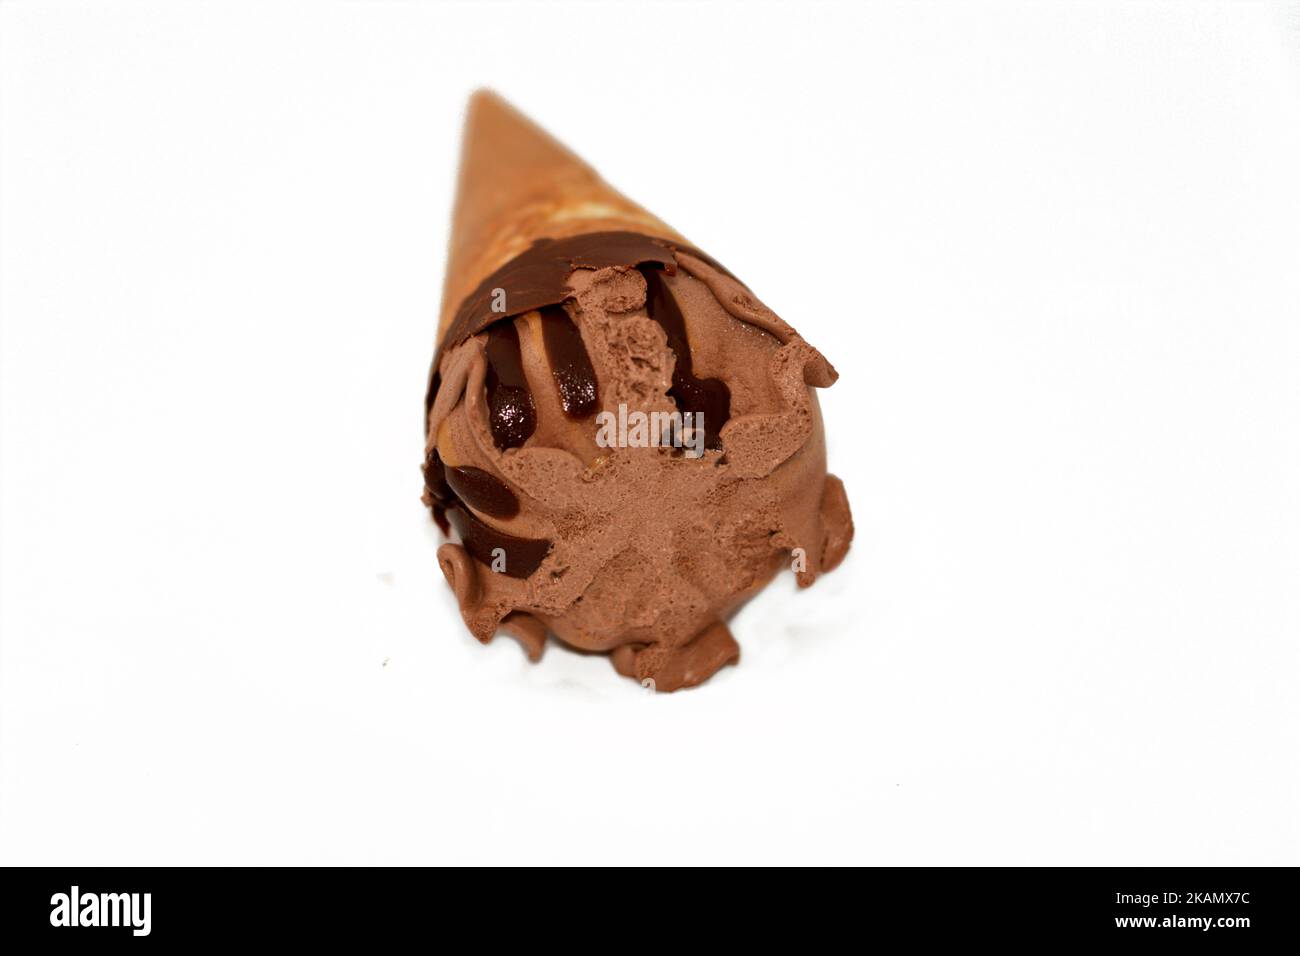 Schokolade-Vanille-Eiscreme-Kugel auf einem Kekskonus mit Schokoladensauce isoliert auf weißem Hintergrund, selektiver Fokus von dunkelbraunem Eiscreme-Kegel mit Stockfoto